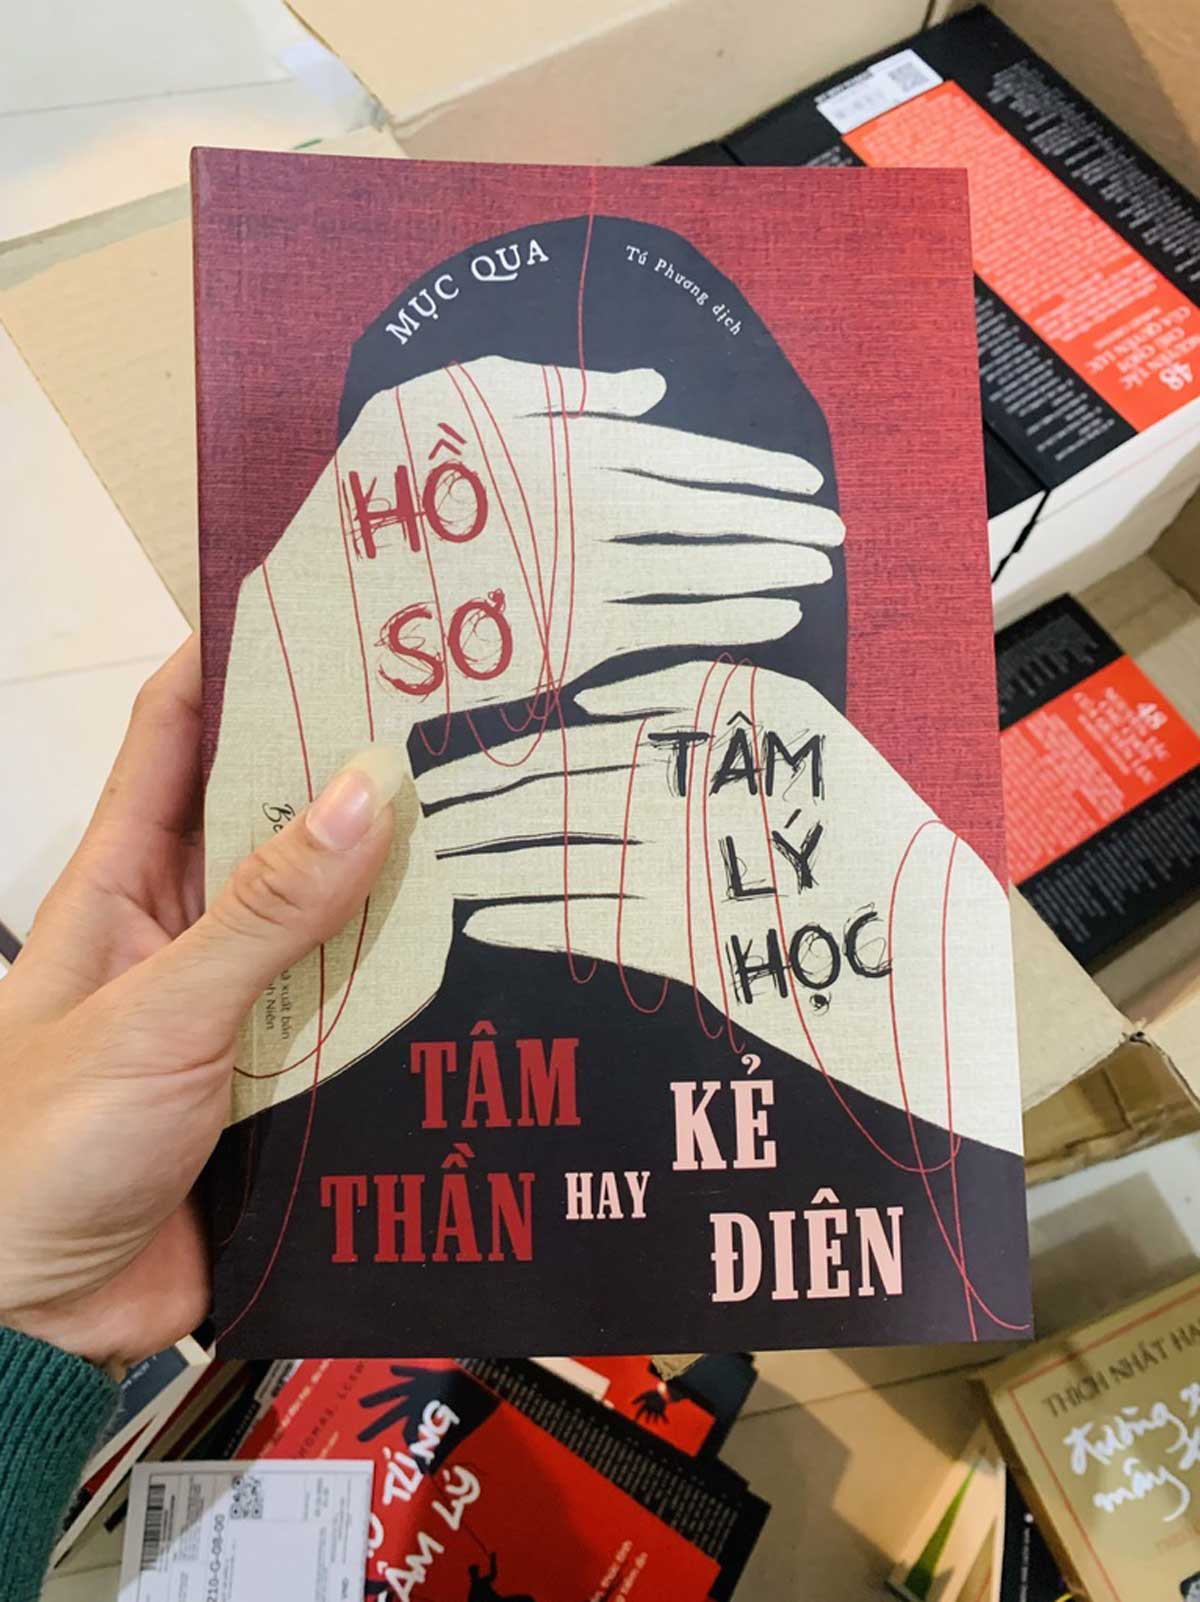 Sach Ho So Tam Ly Hoc Tam Than Hay Ke Dien - 【Review Sách】Hồ Sơ Tâm Lý Học Tâm Thần Hay Kẻ Điên | Tải Ebook FULL Pdf